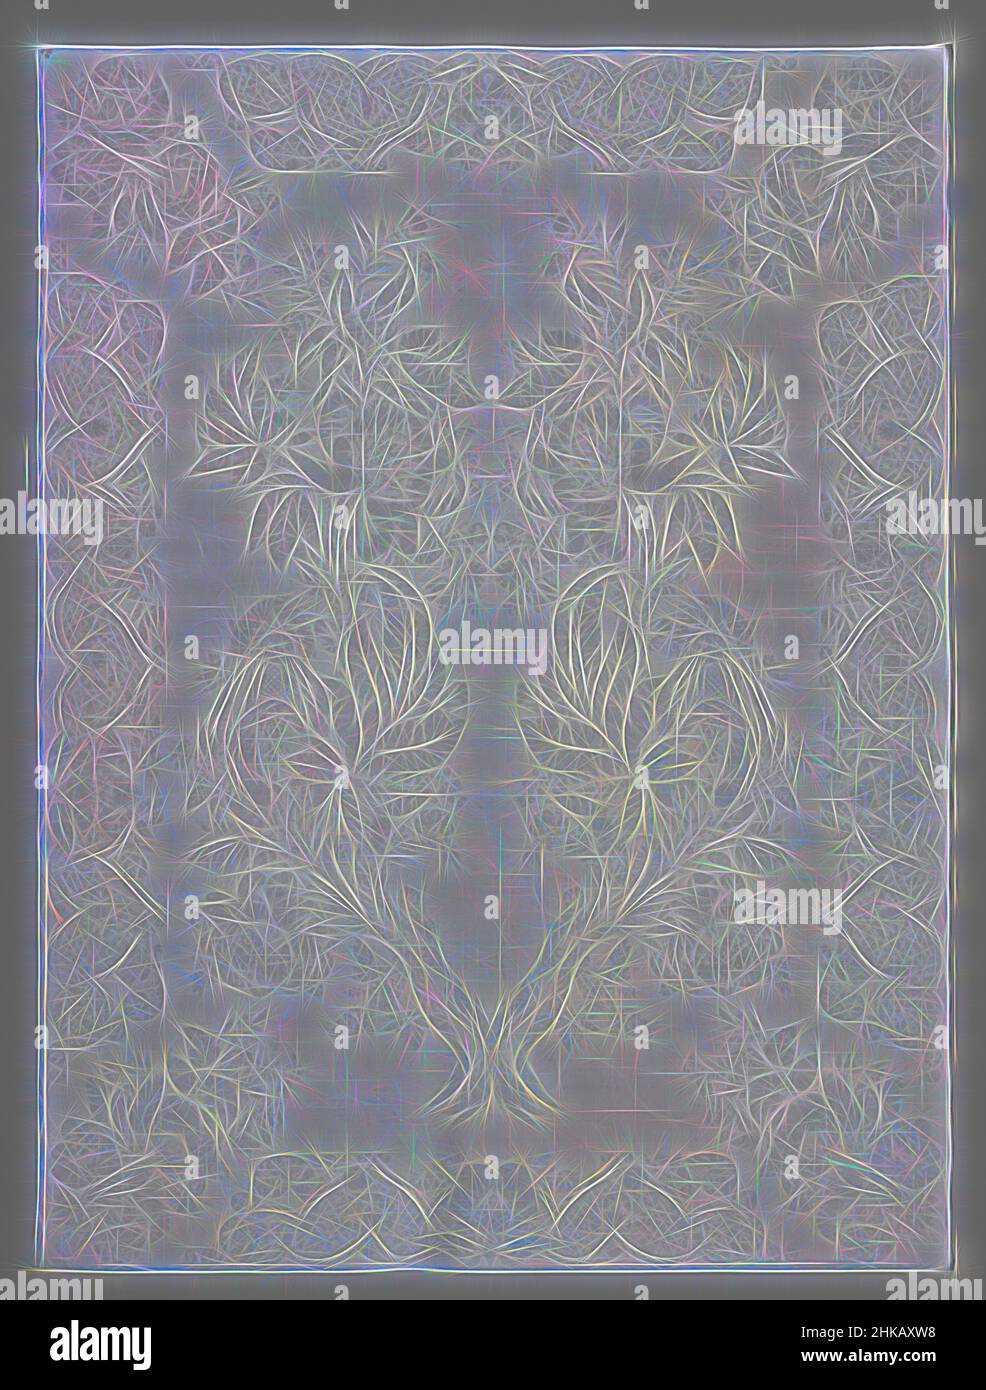 S'inspirant de la serviette de table en lin damassée d'un motif floral, cette serviette de table en lin damassée d'une branche de fleurs et de fruits. Une serviette accompagne la serviette, Vlaanderen, c. 1732 - c. 1735, lin (matériau), damassé, hauteur 116,7 cm × largeur 87 cm, repensé par Artotop. L'art classique réinventé avec une touche moderne. Conception de lumière chaleureuse et gaie, de luminosité et de rayonnement de lumière. La photographie s'inspire du surréalisme et du futurisme, embrassant l'énergie dynamique de la technologie moderne, du mouvement, de la vitesse et révolutionne la culture Banque D'Images